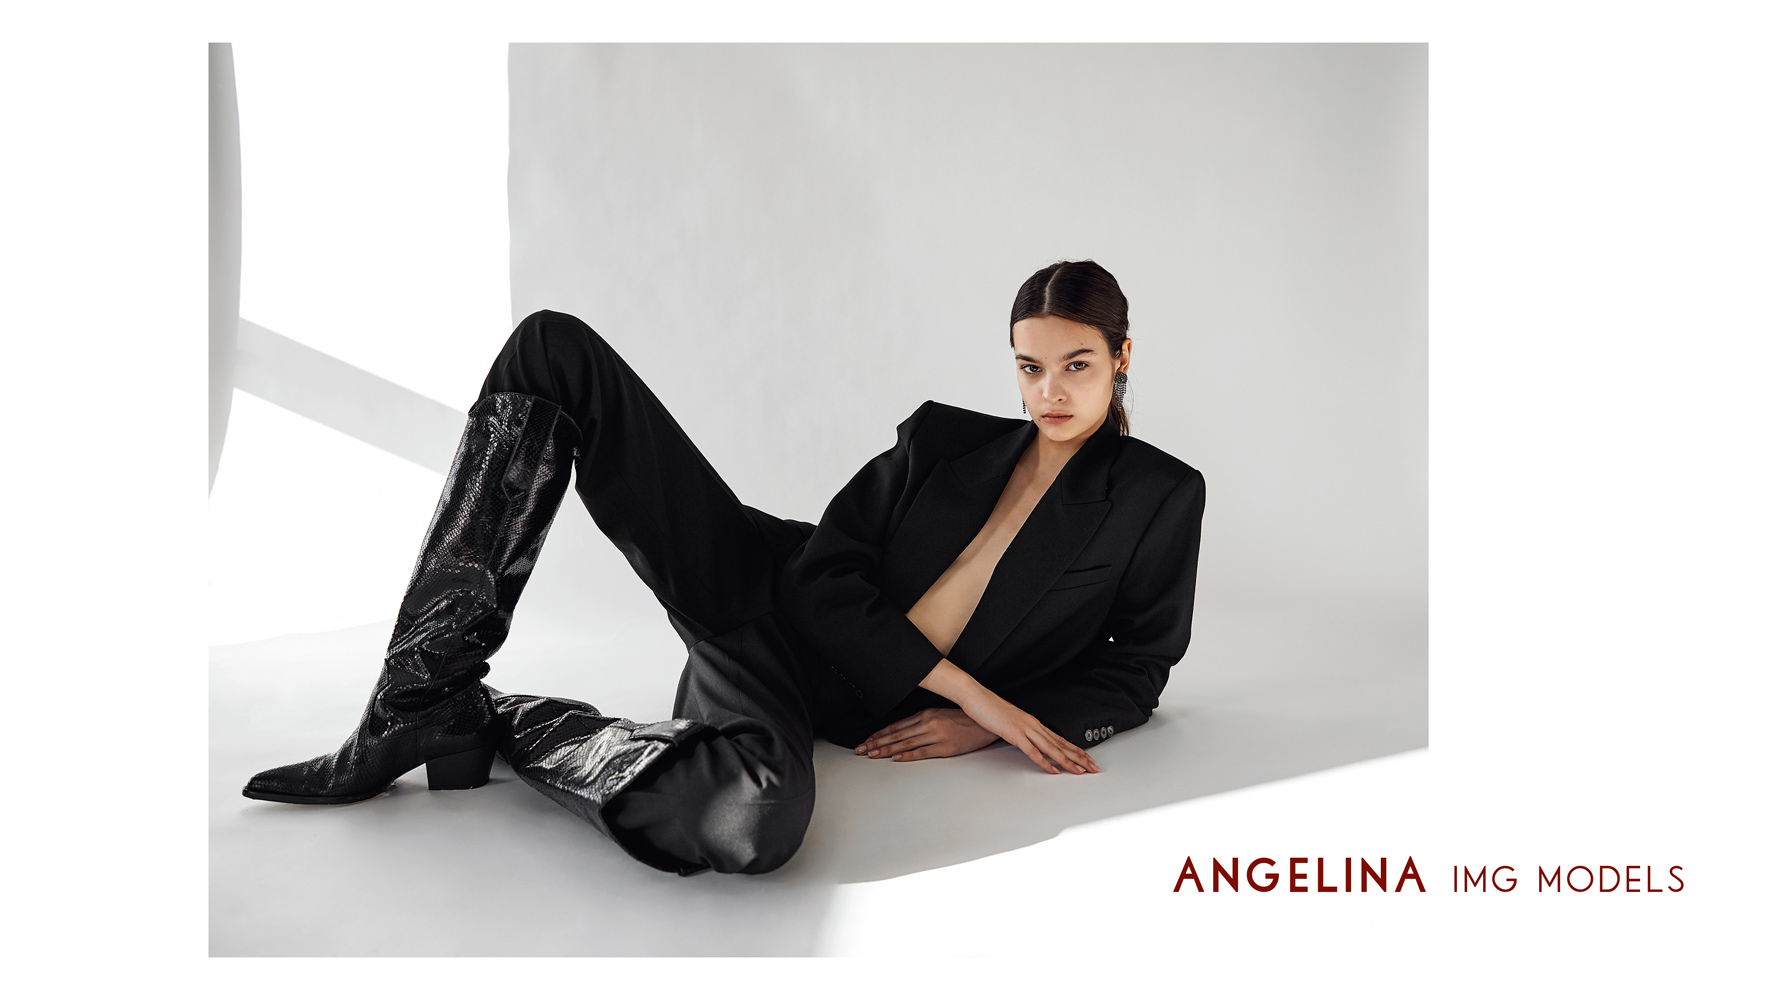 Angelina IMG Models